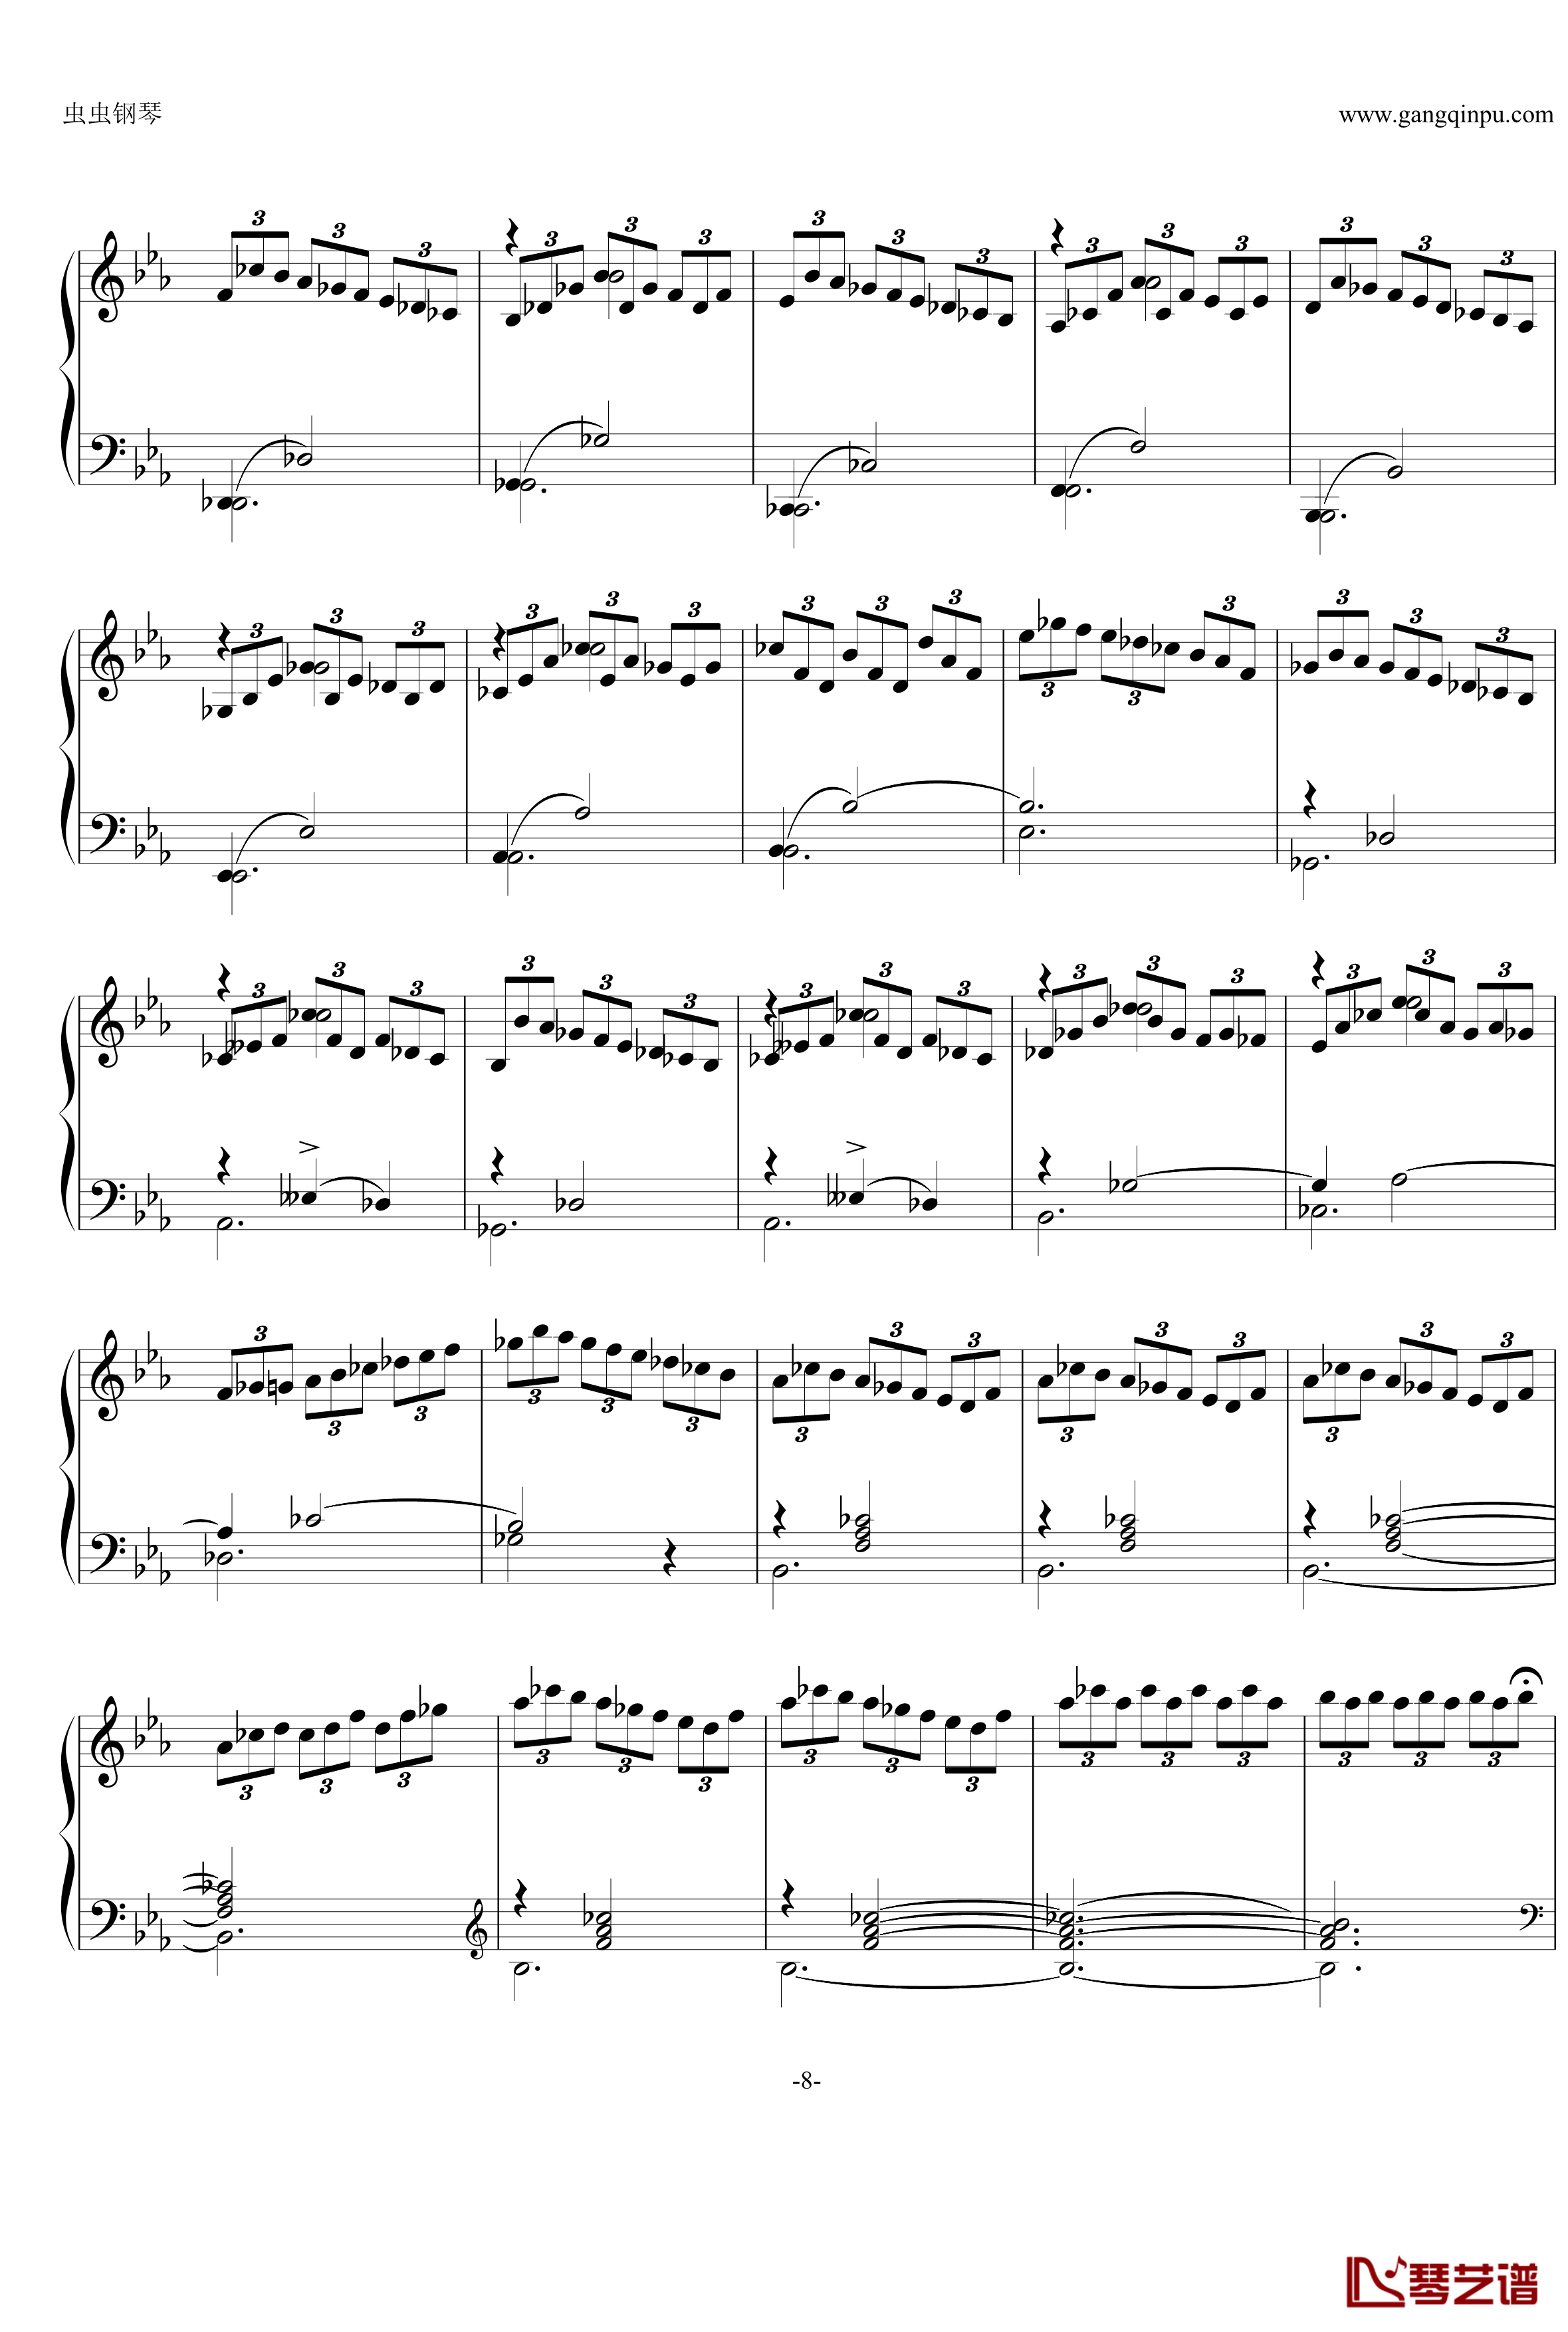 即兴曲Op.90 No.2钢琴谱-舒伯特-又名D899 No.28